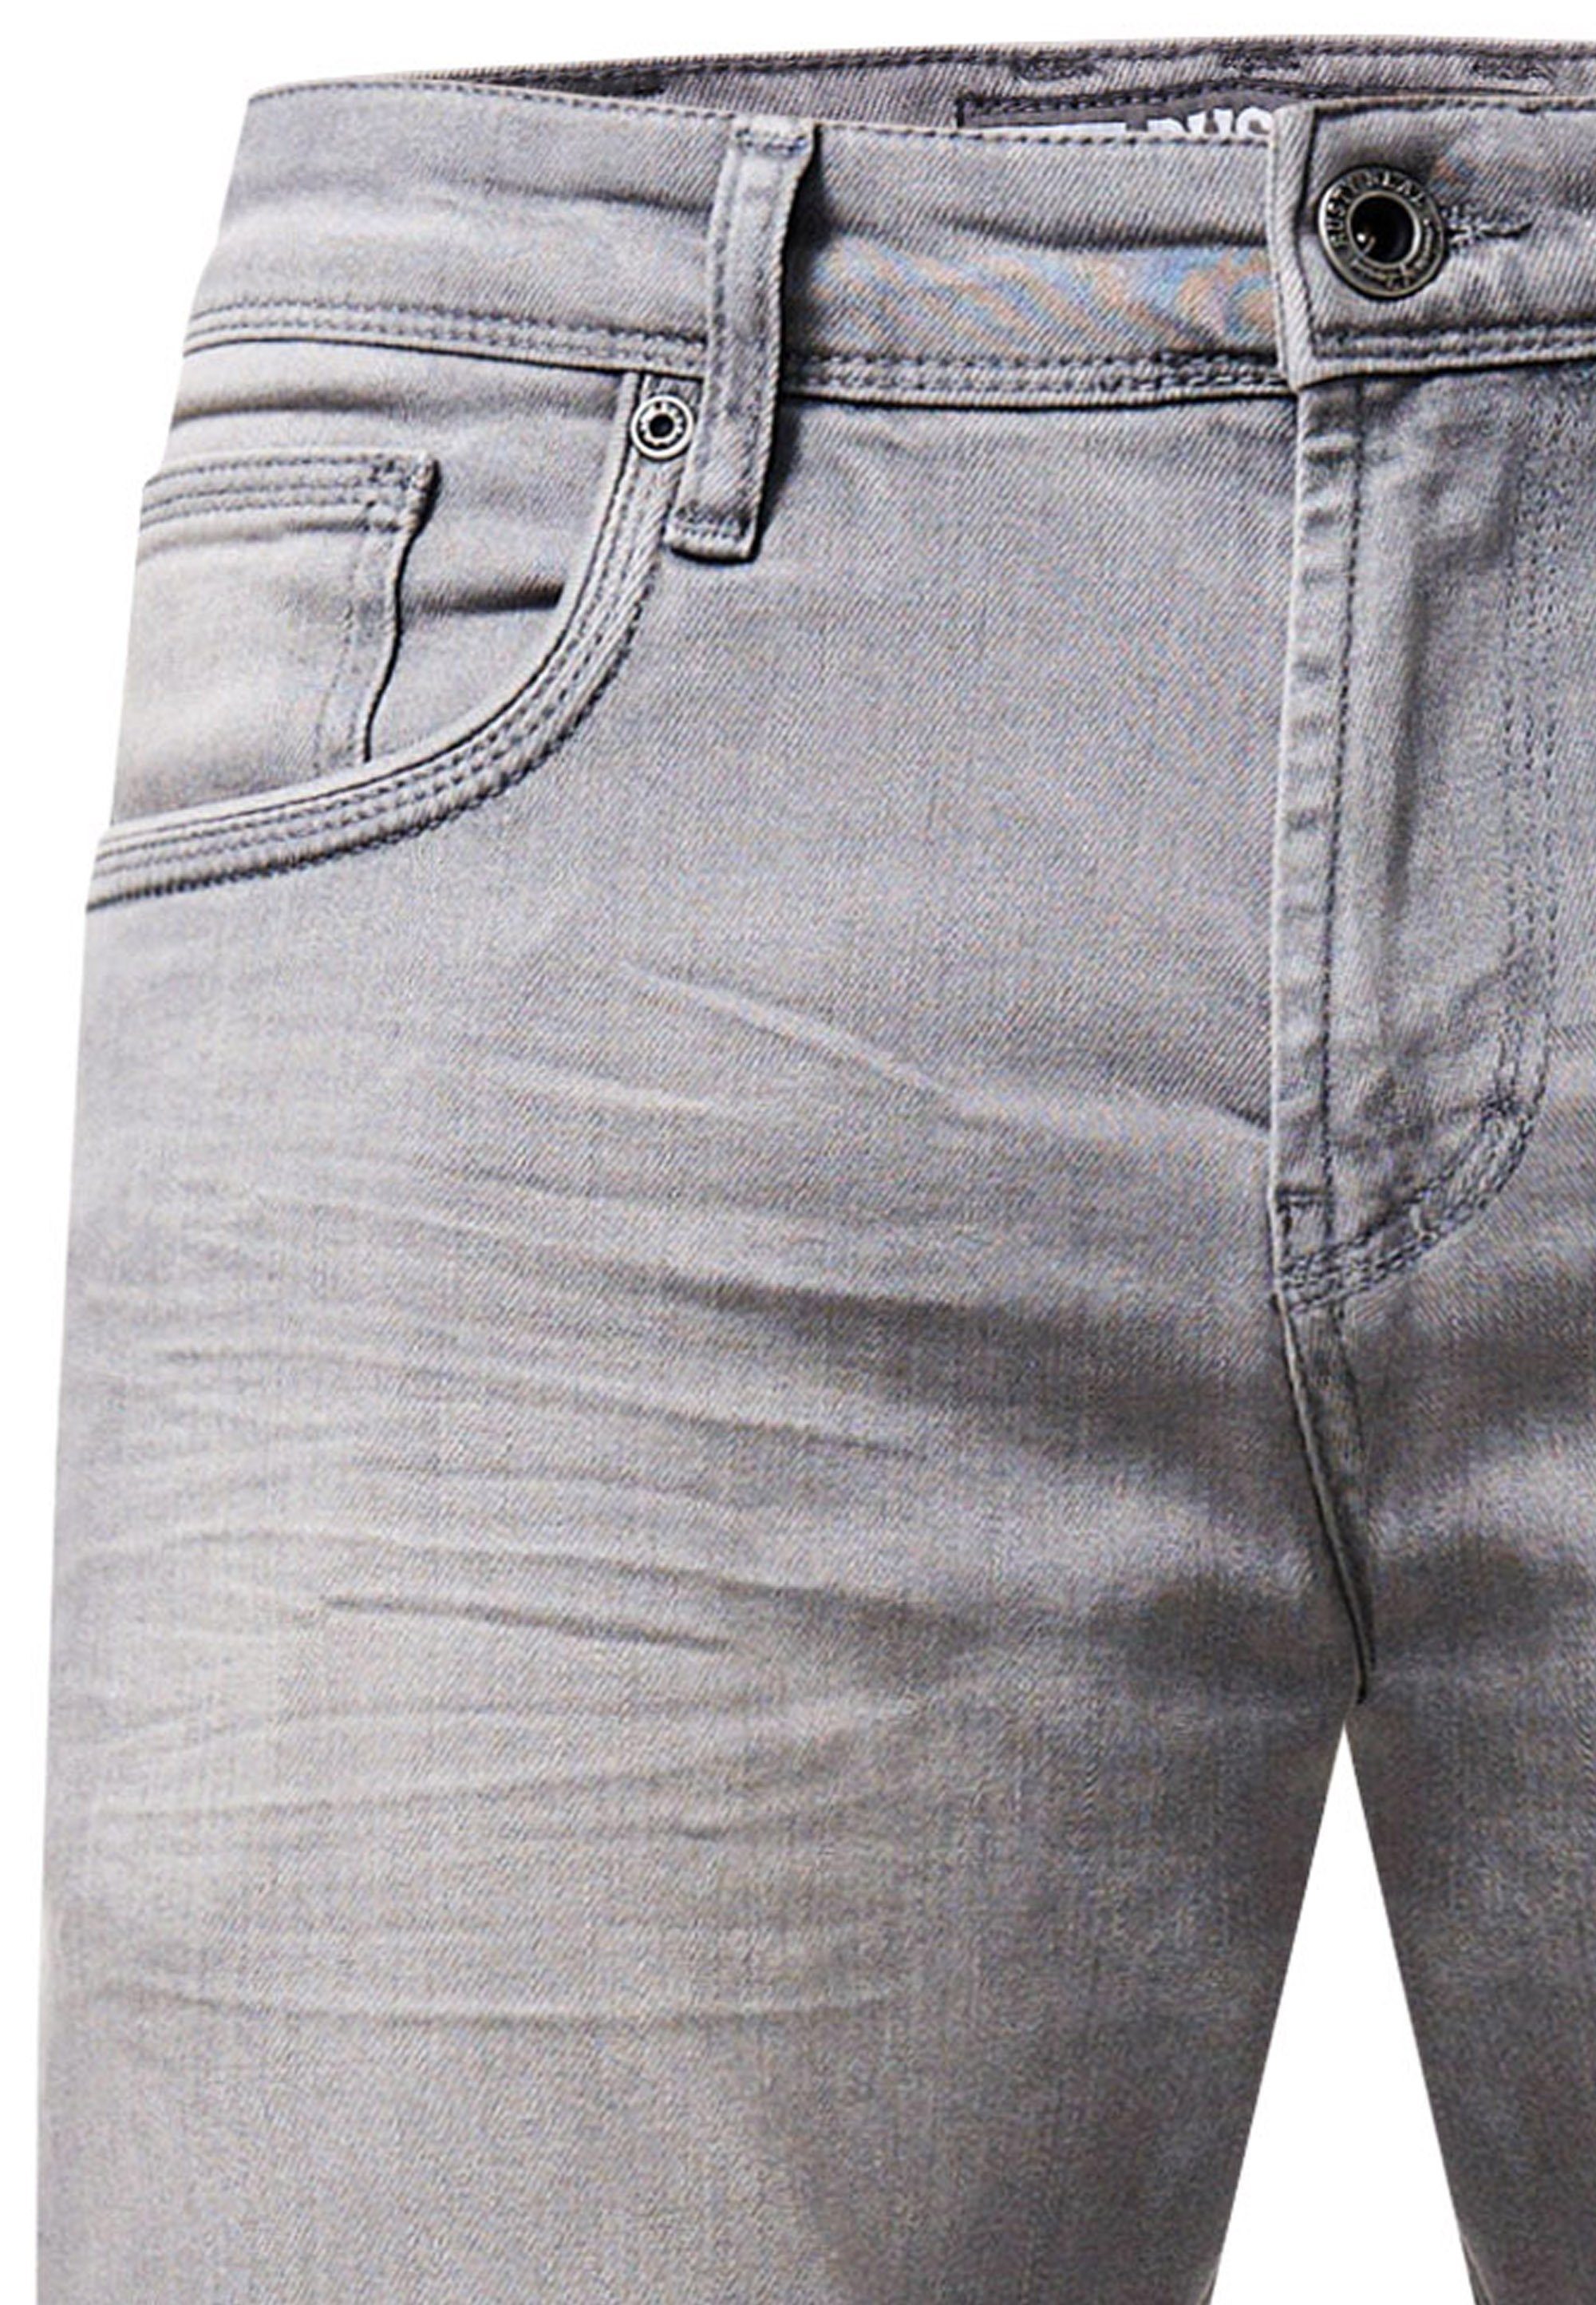 klassischen Rusty MELVIN im Neal Straight-Jeans grau 5-Pocket-Stil